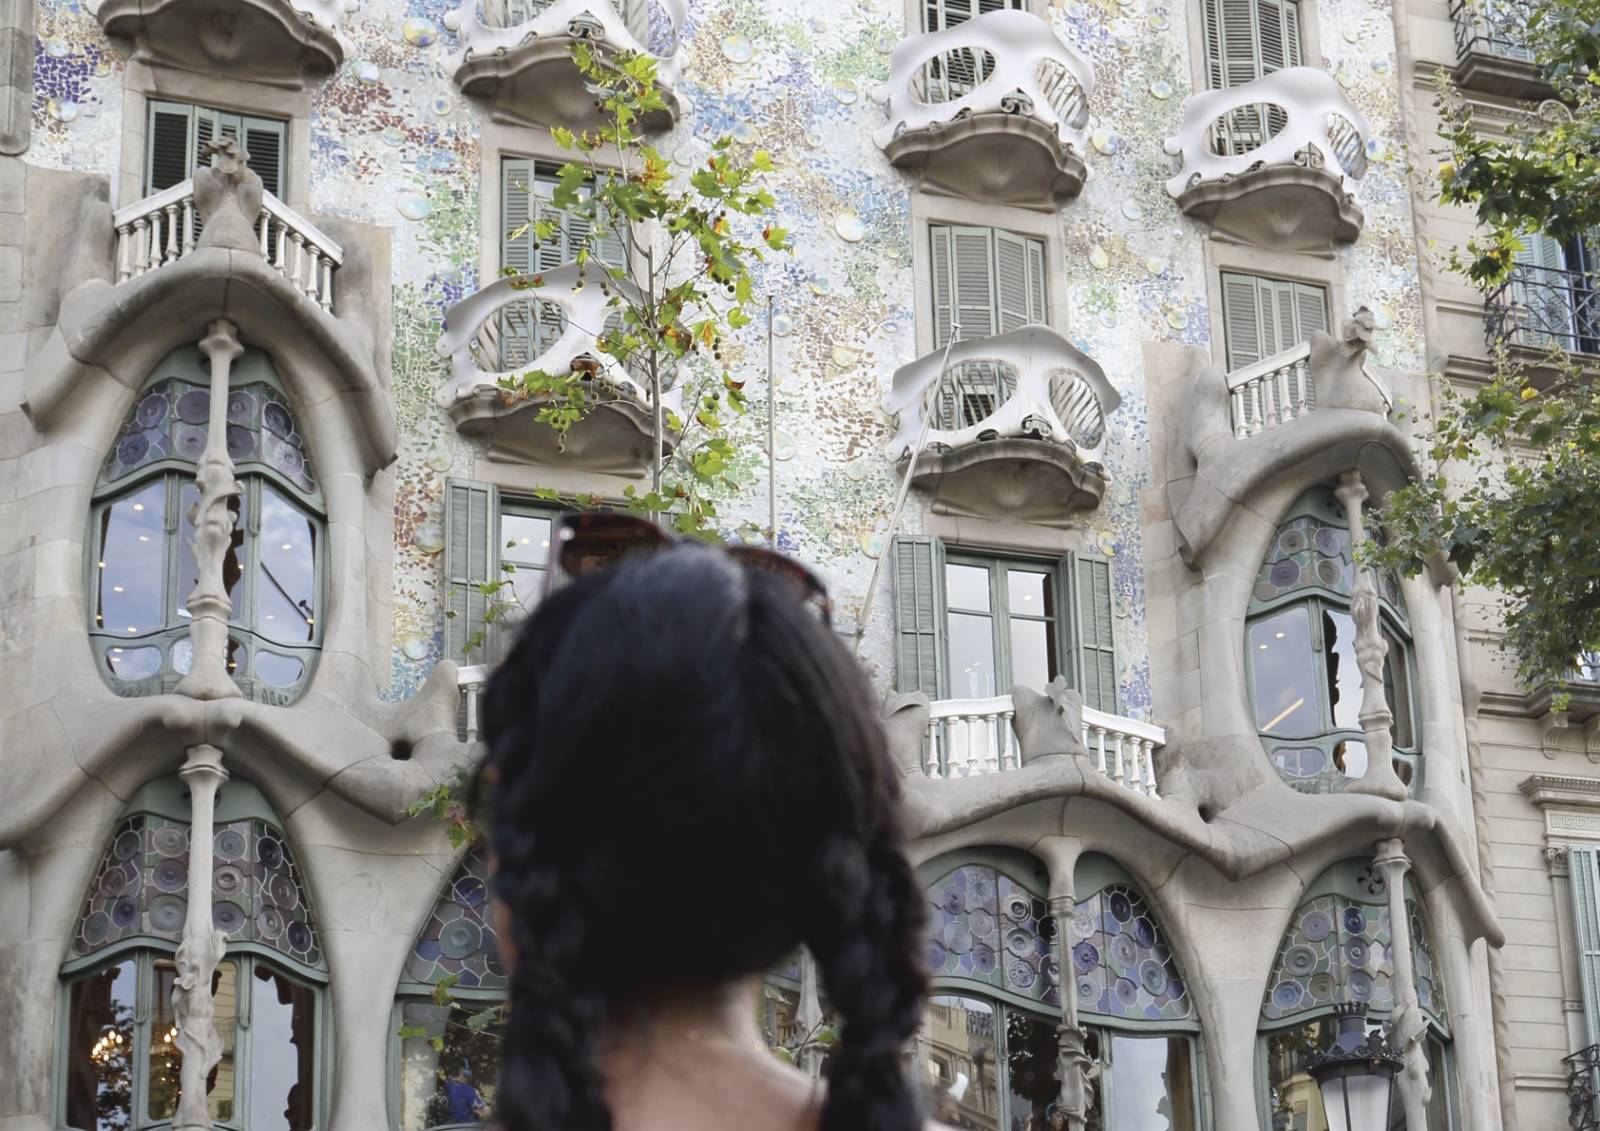 Casa Batlló von Antoni Gaudí in Barcelona